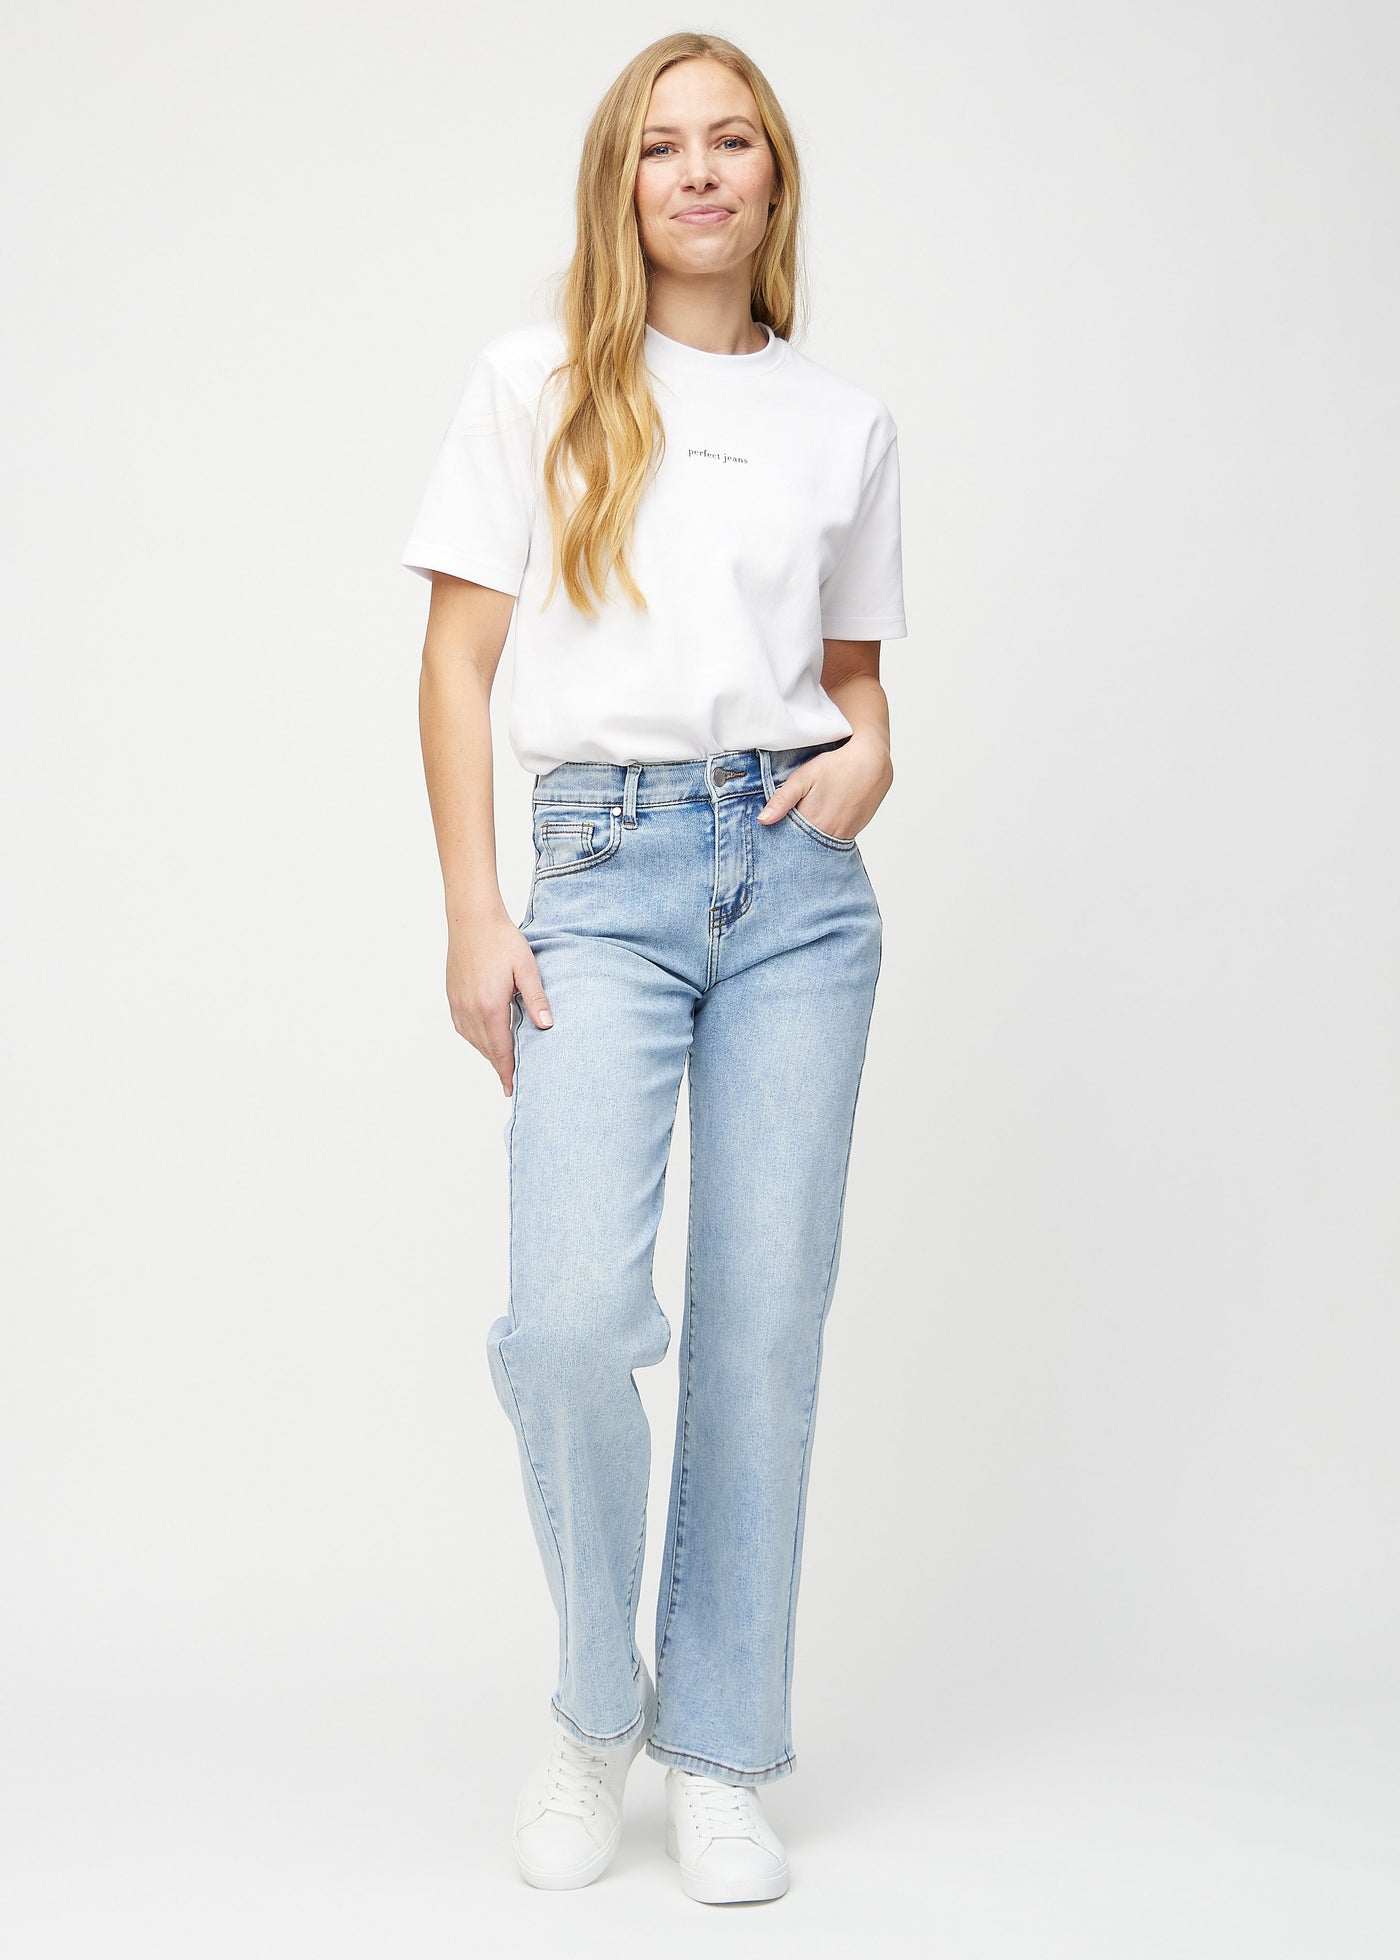 Fuldt billede af model i lys denim loose jeans.